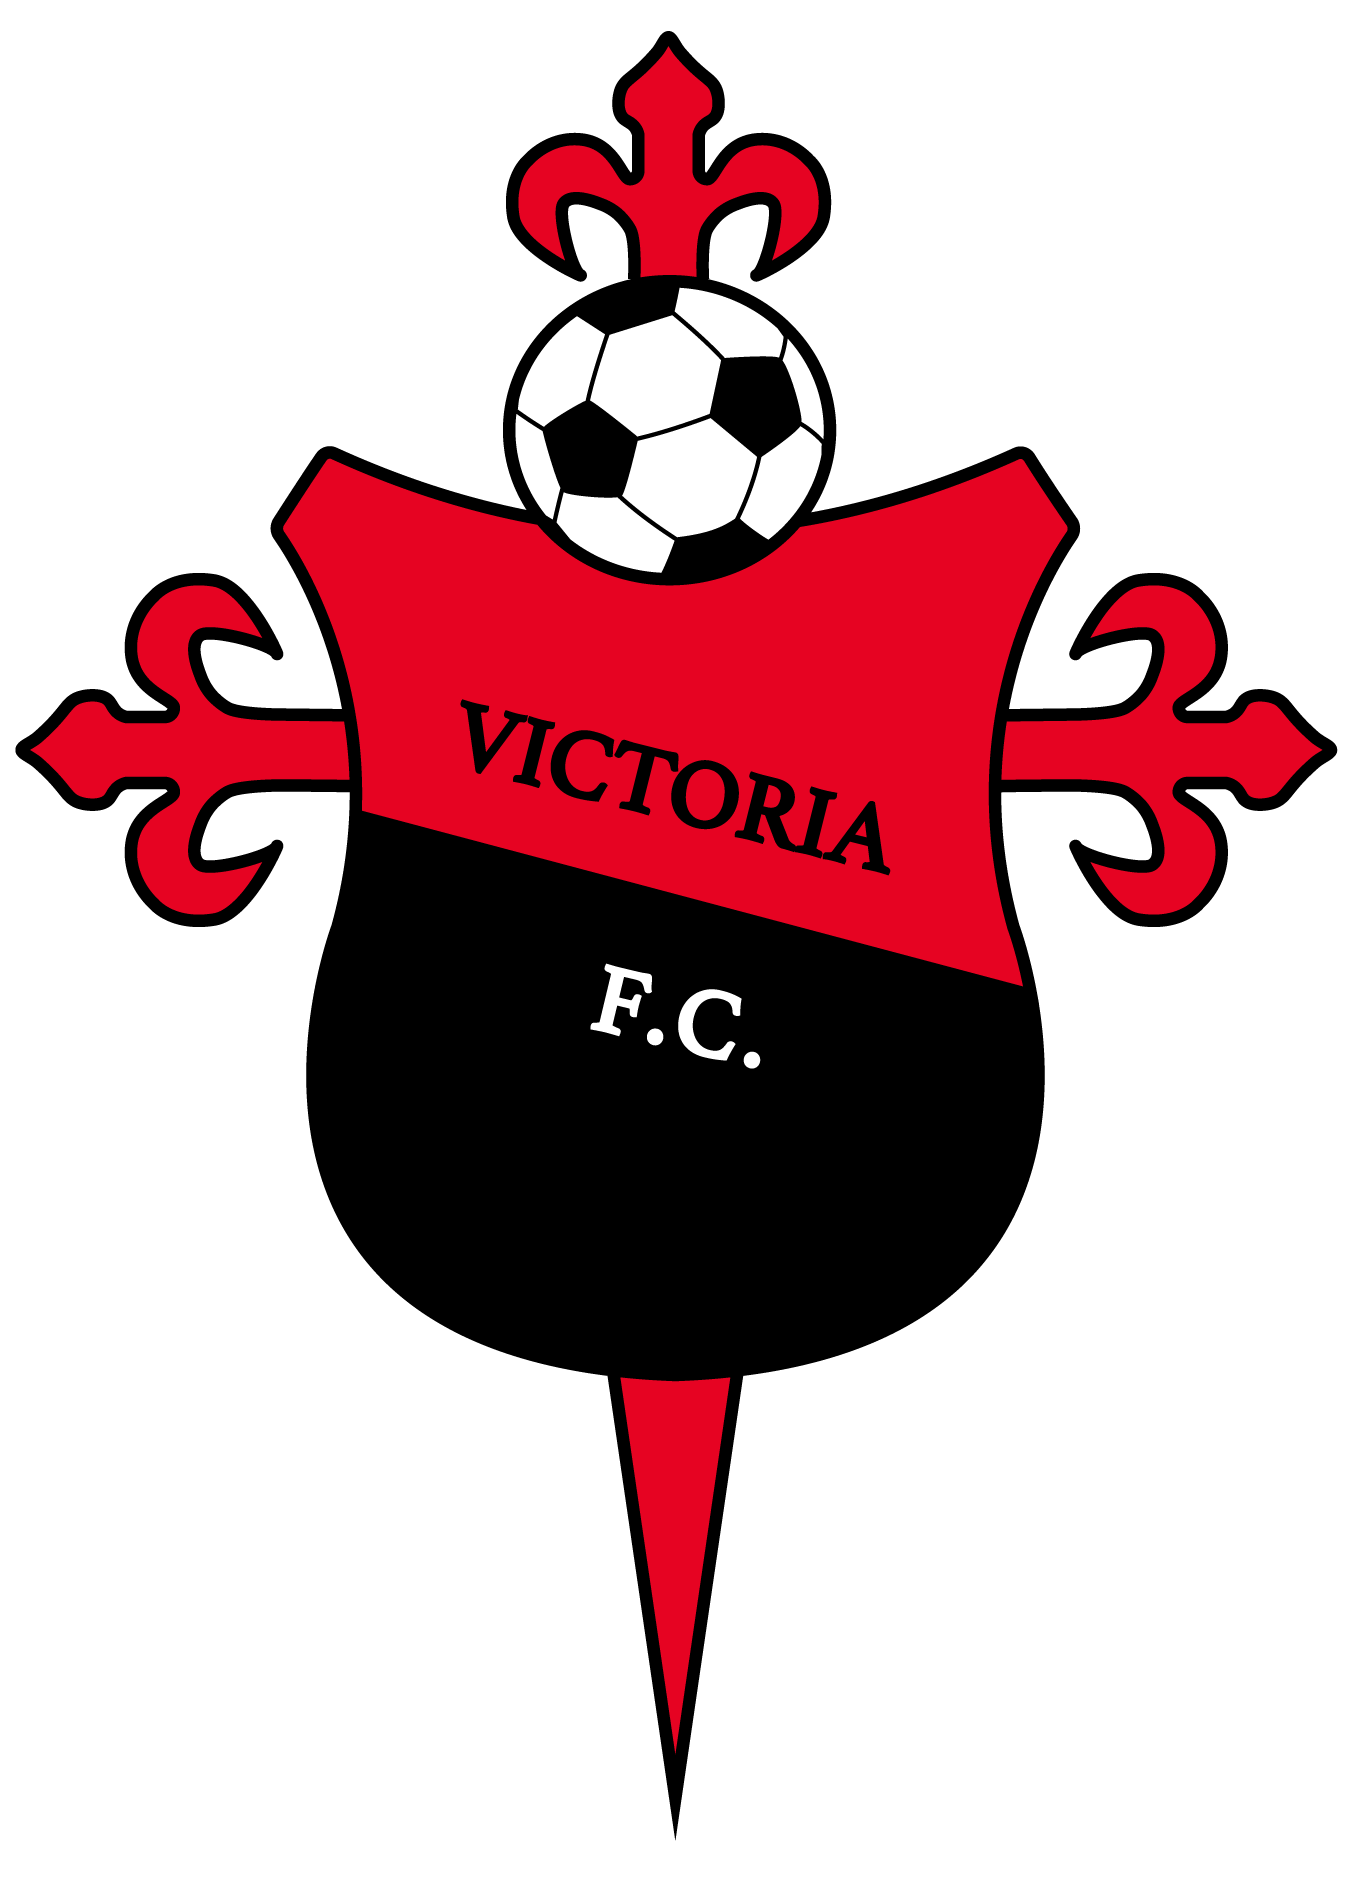 Página oficial de Victoria FC de Santiago | Victoria FC de Santiago